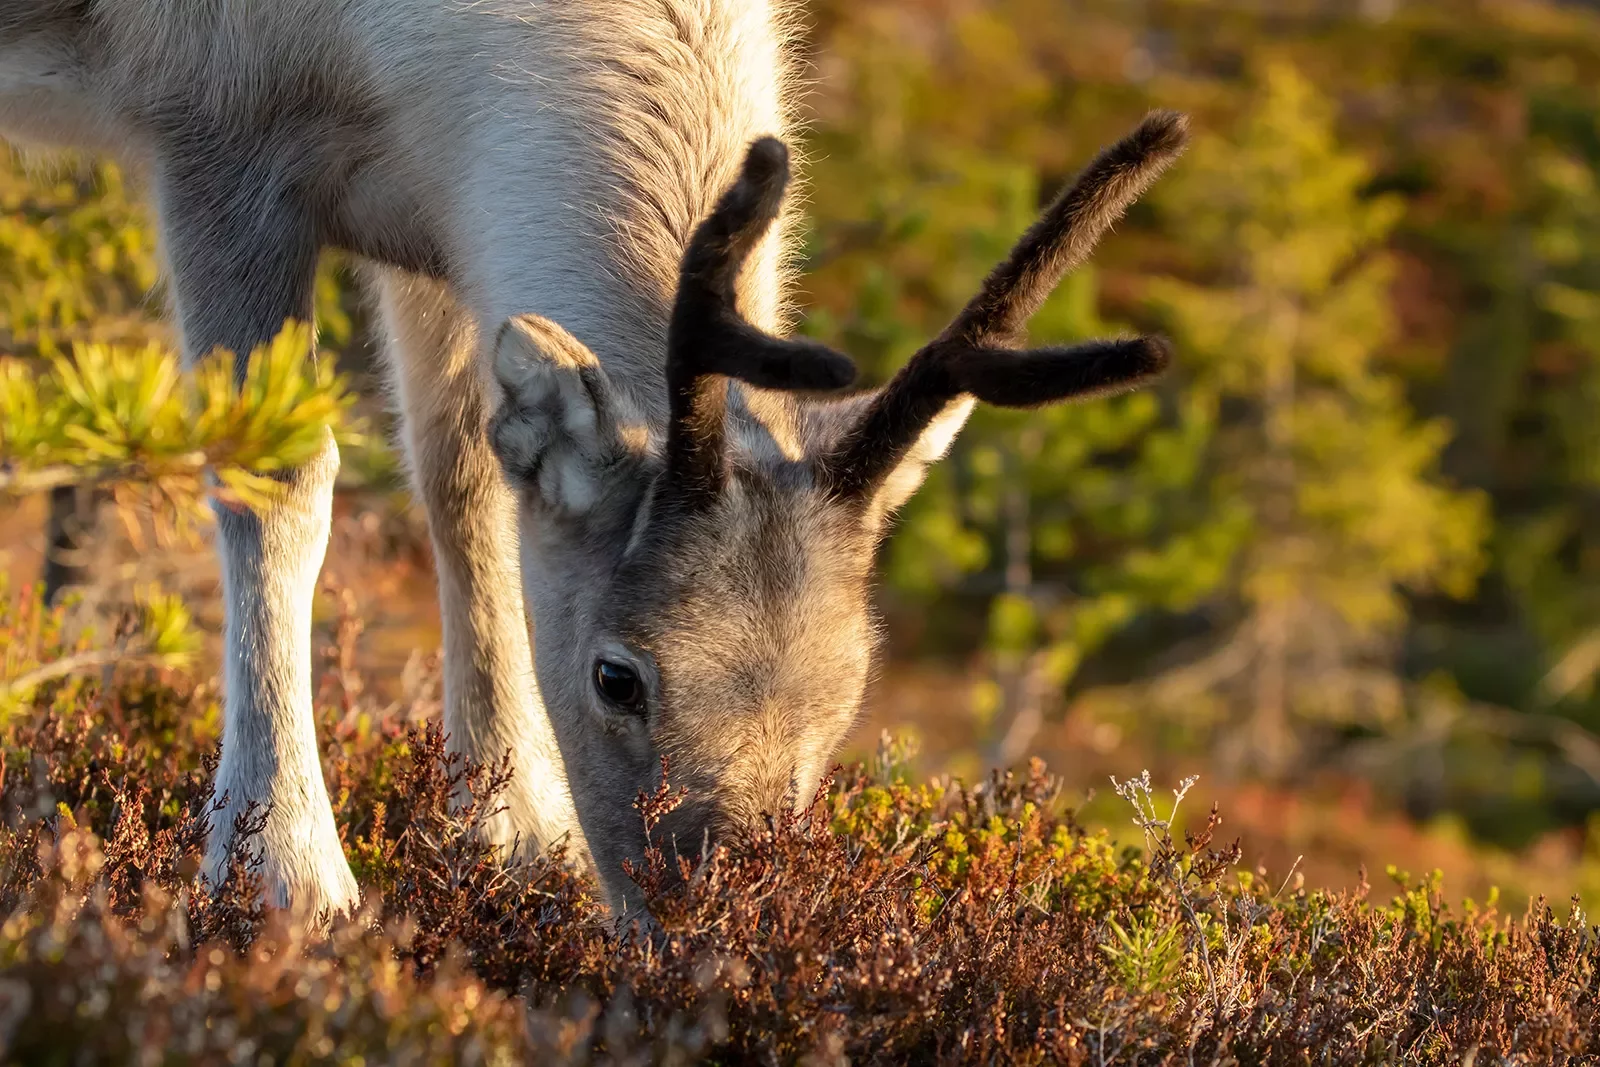 Reindeer Eating Finland